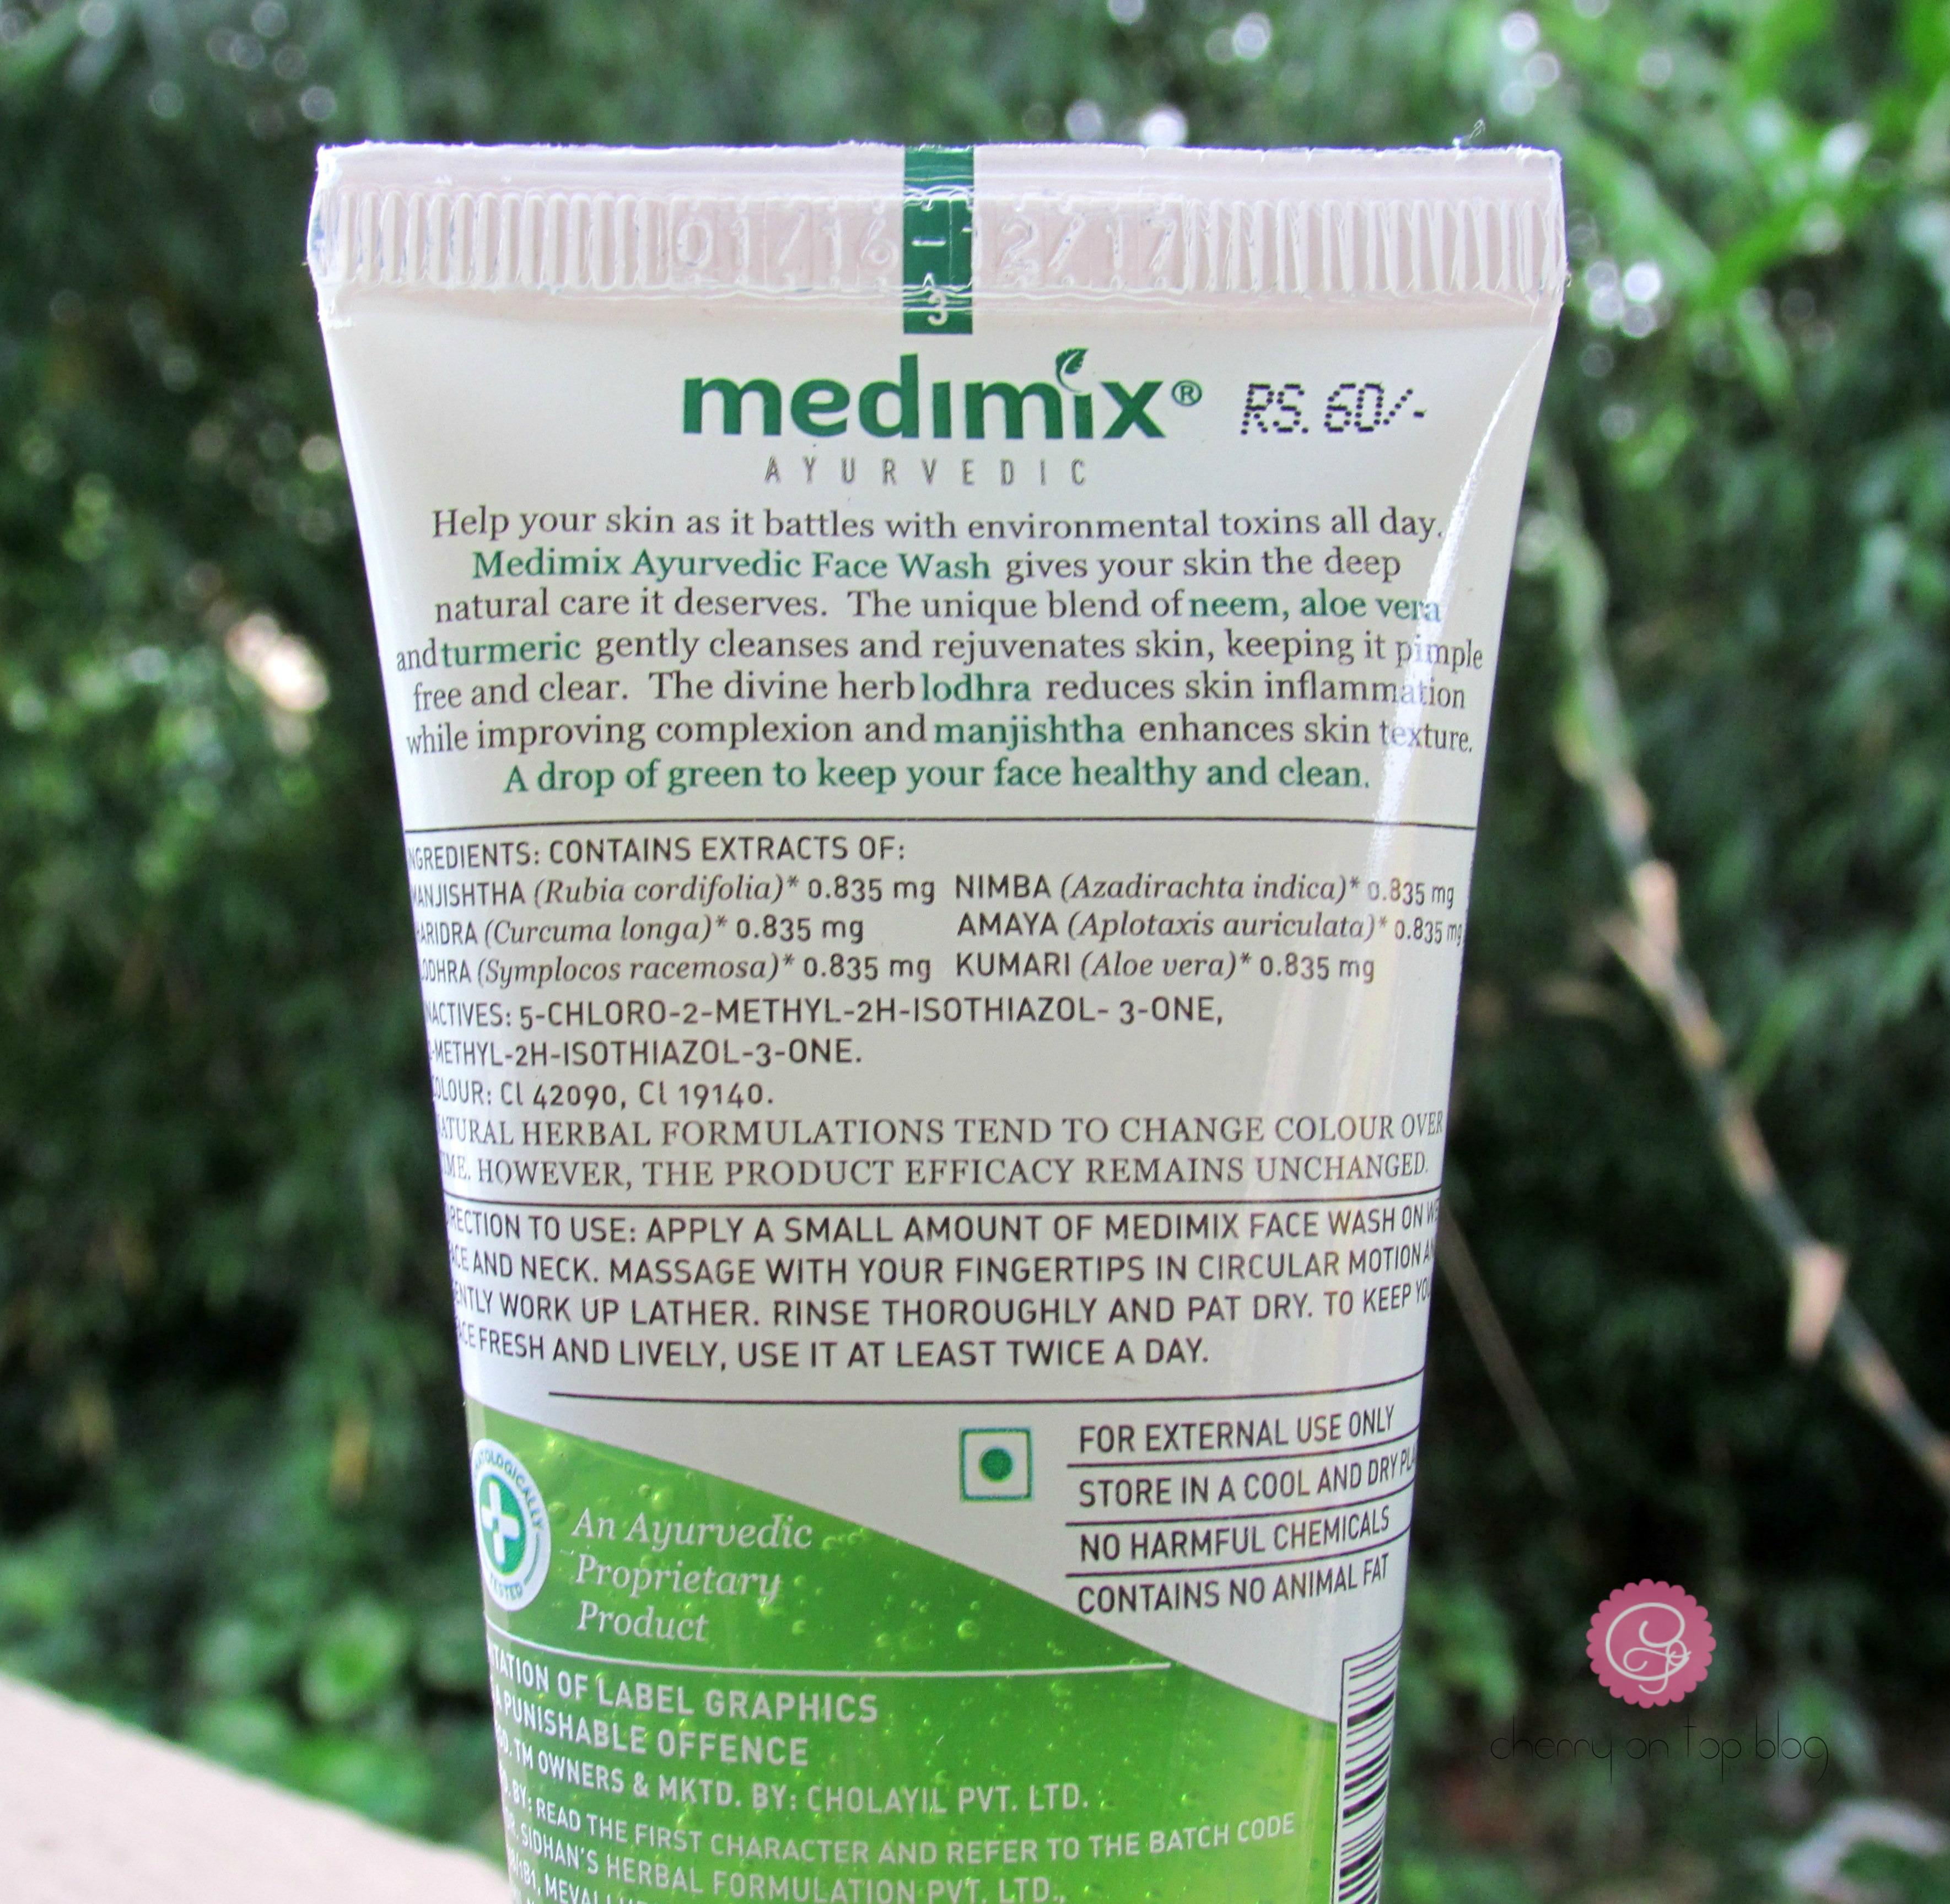 Medimix Ayurvedic Facewash Review| cherryontopblog.com